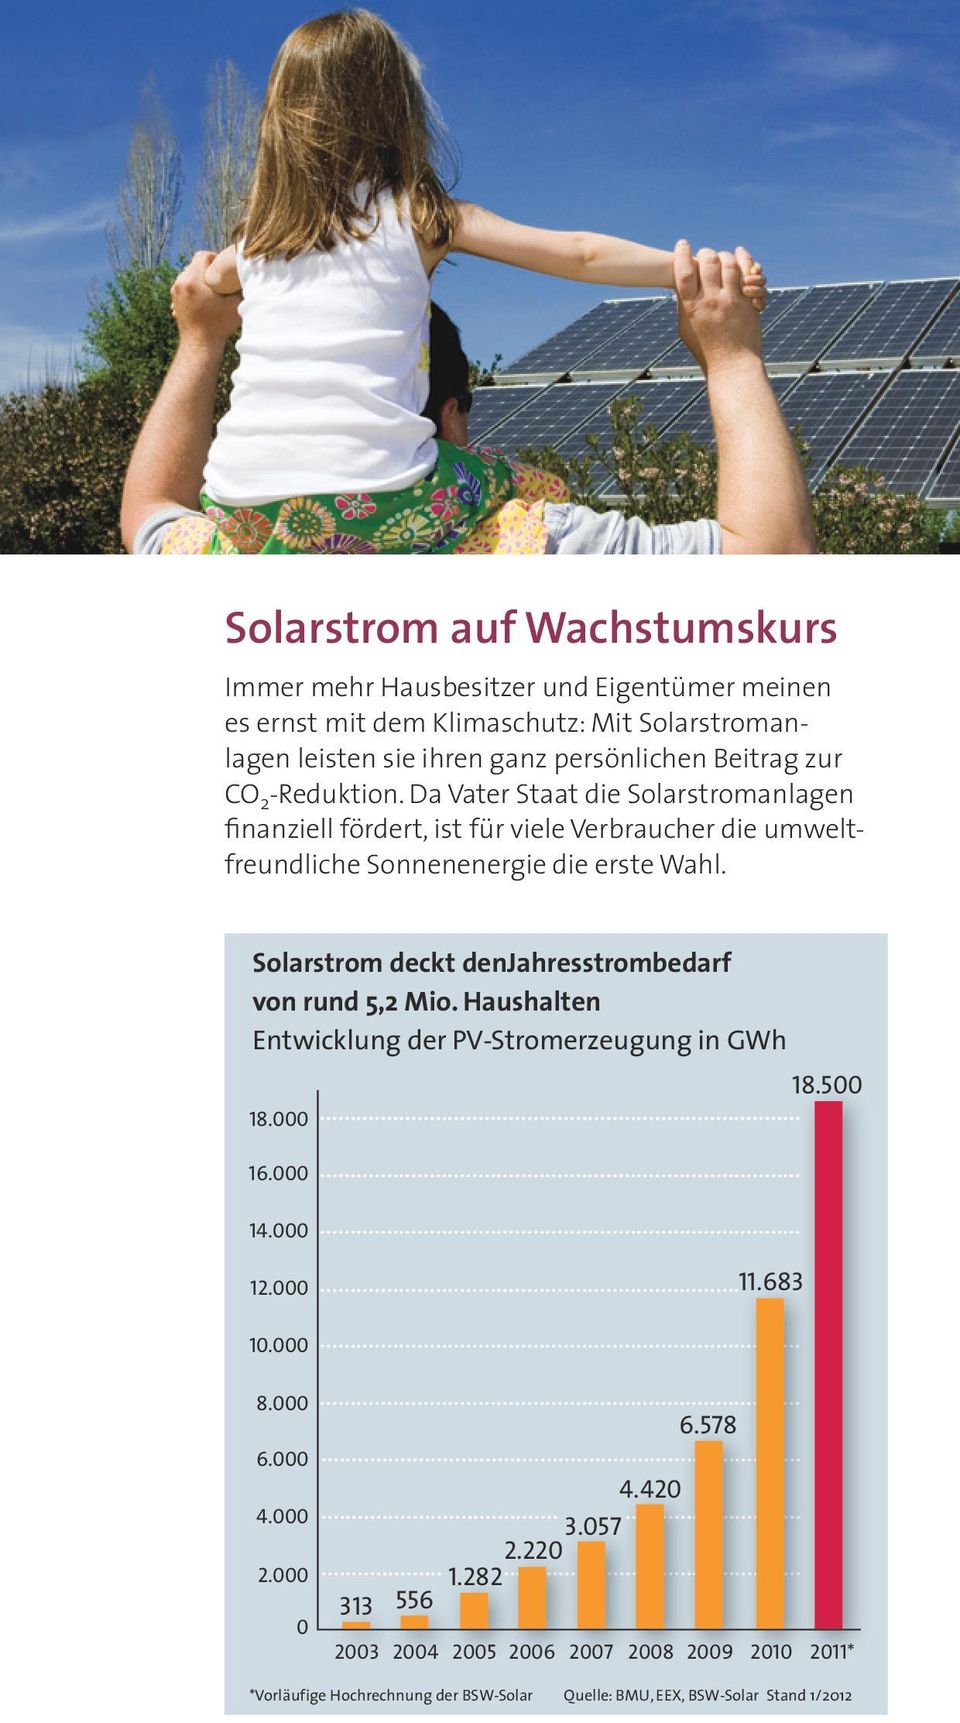 Solarstrom deckt denjahresstrombedarf von rund 5,2 Mio. Haushalten Entwicklung der PV-Stromerzeugung in GWh 18.500 18.000... 16.000... 14.000... 12.000... 11.683 10.000... 8.